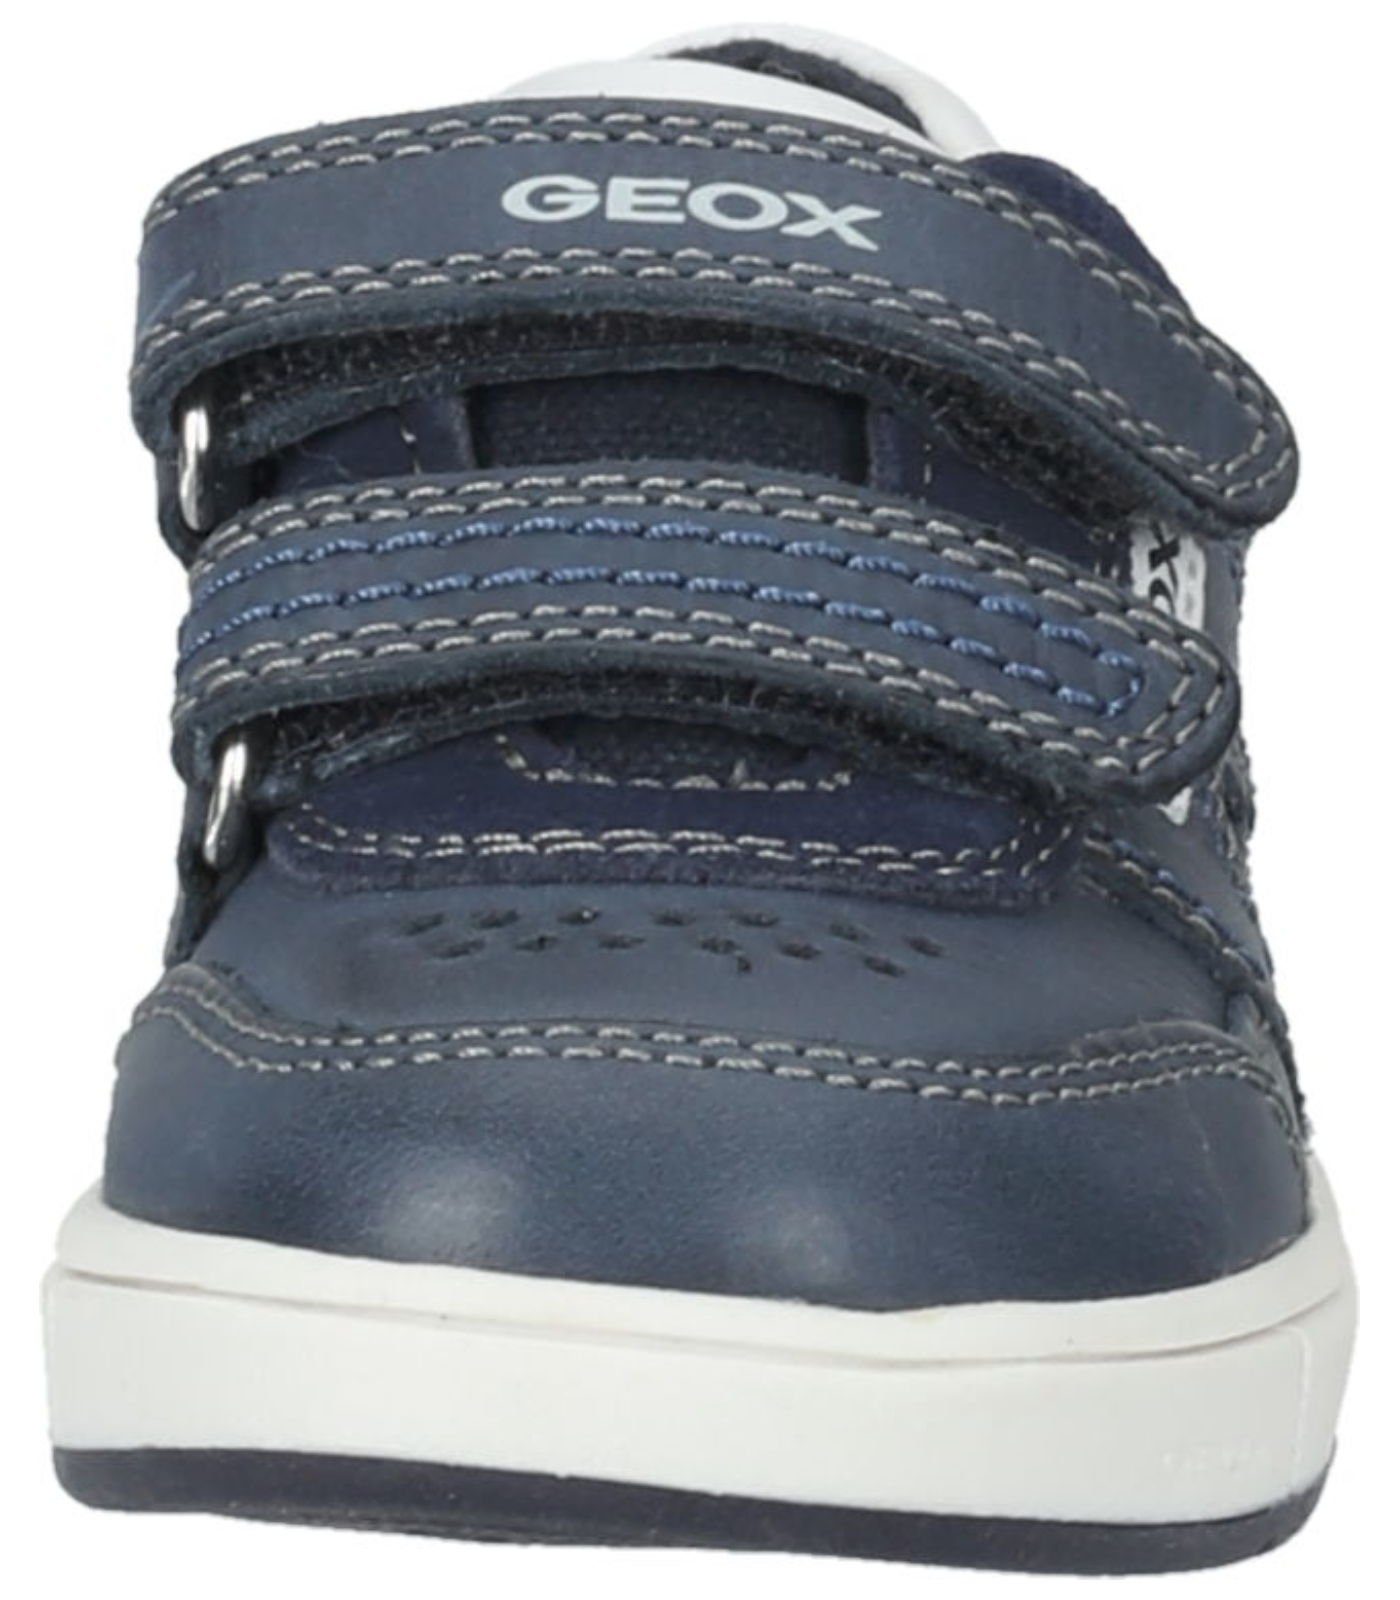 Geox Leder/Textil Sneaker Sneaker Weiß Navy